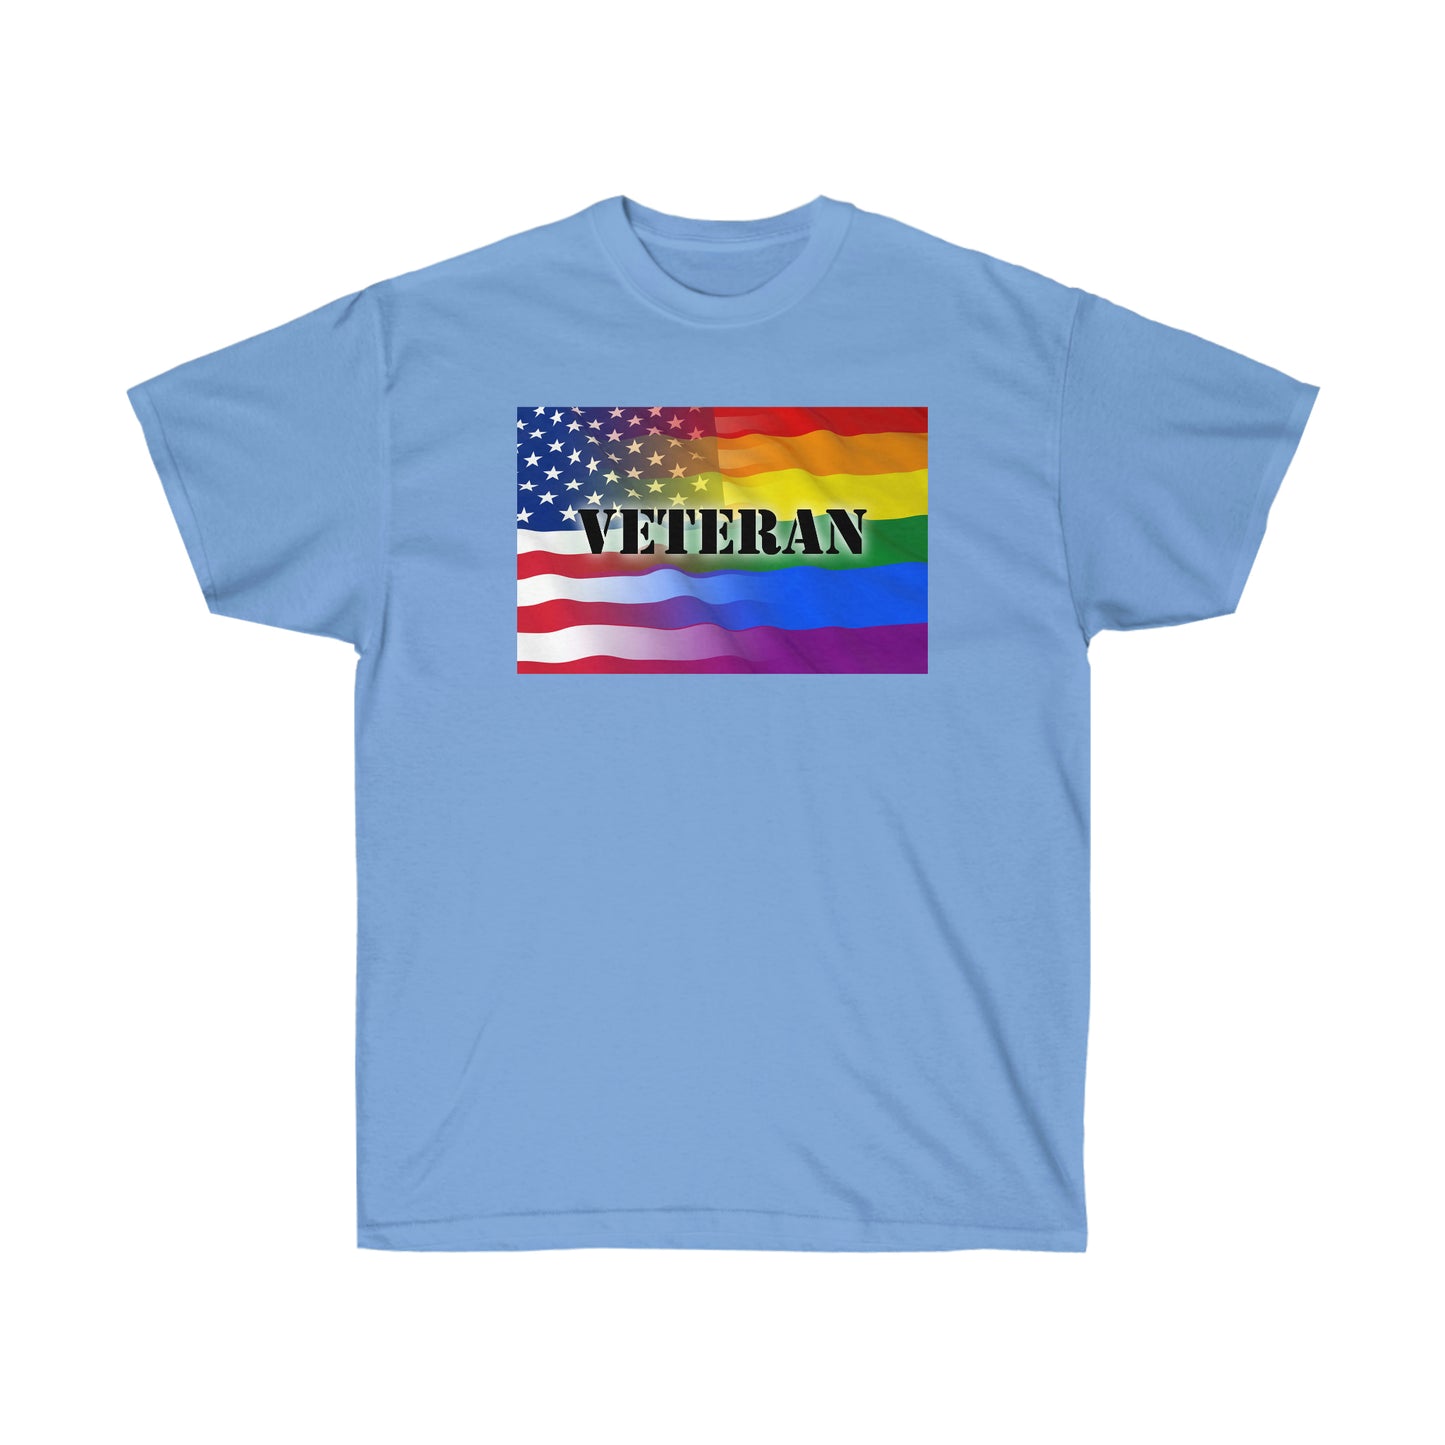 Camiseta unisex para adultos veteranos americanos LGBTQ